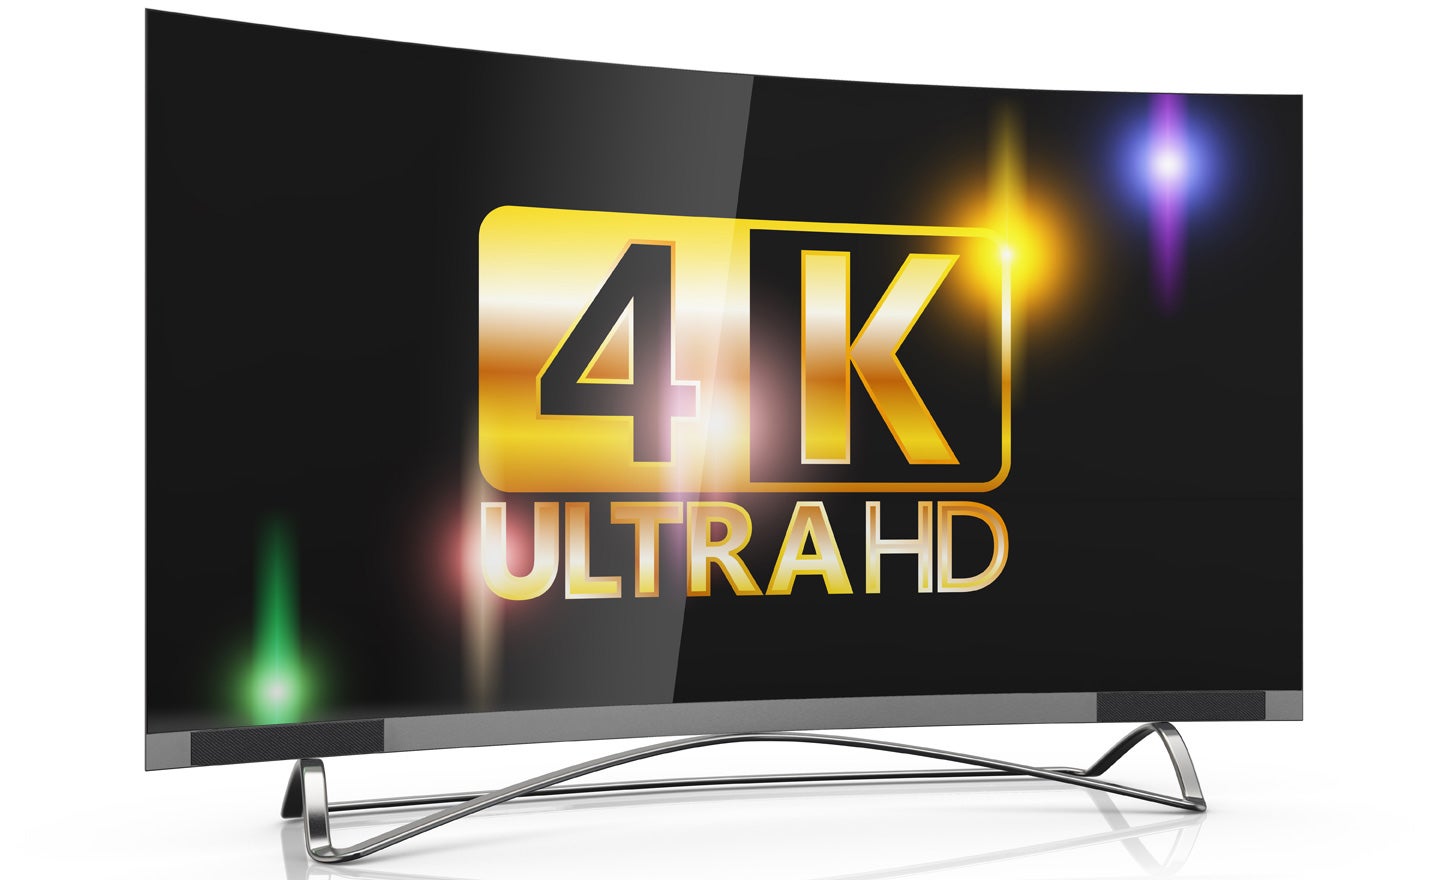 4K Ultra HD TVs